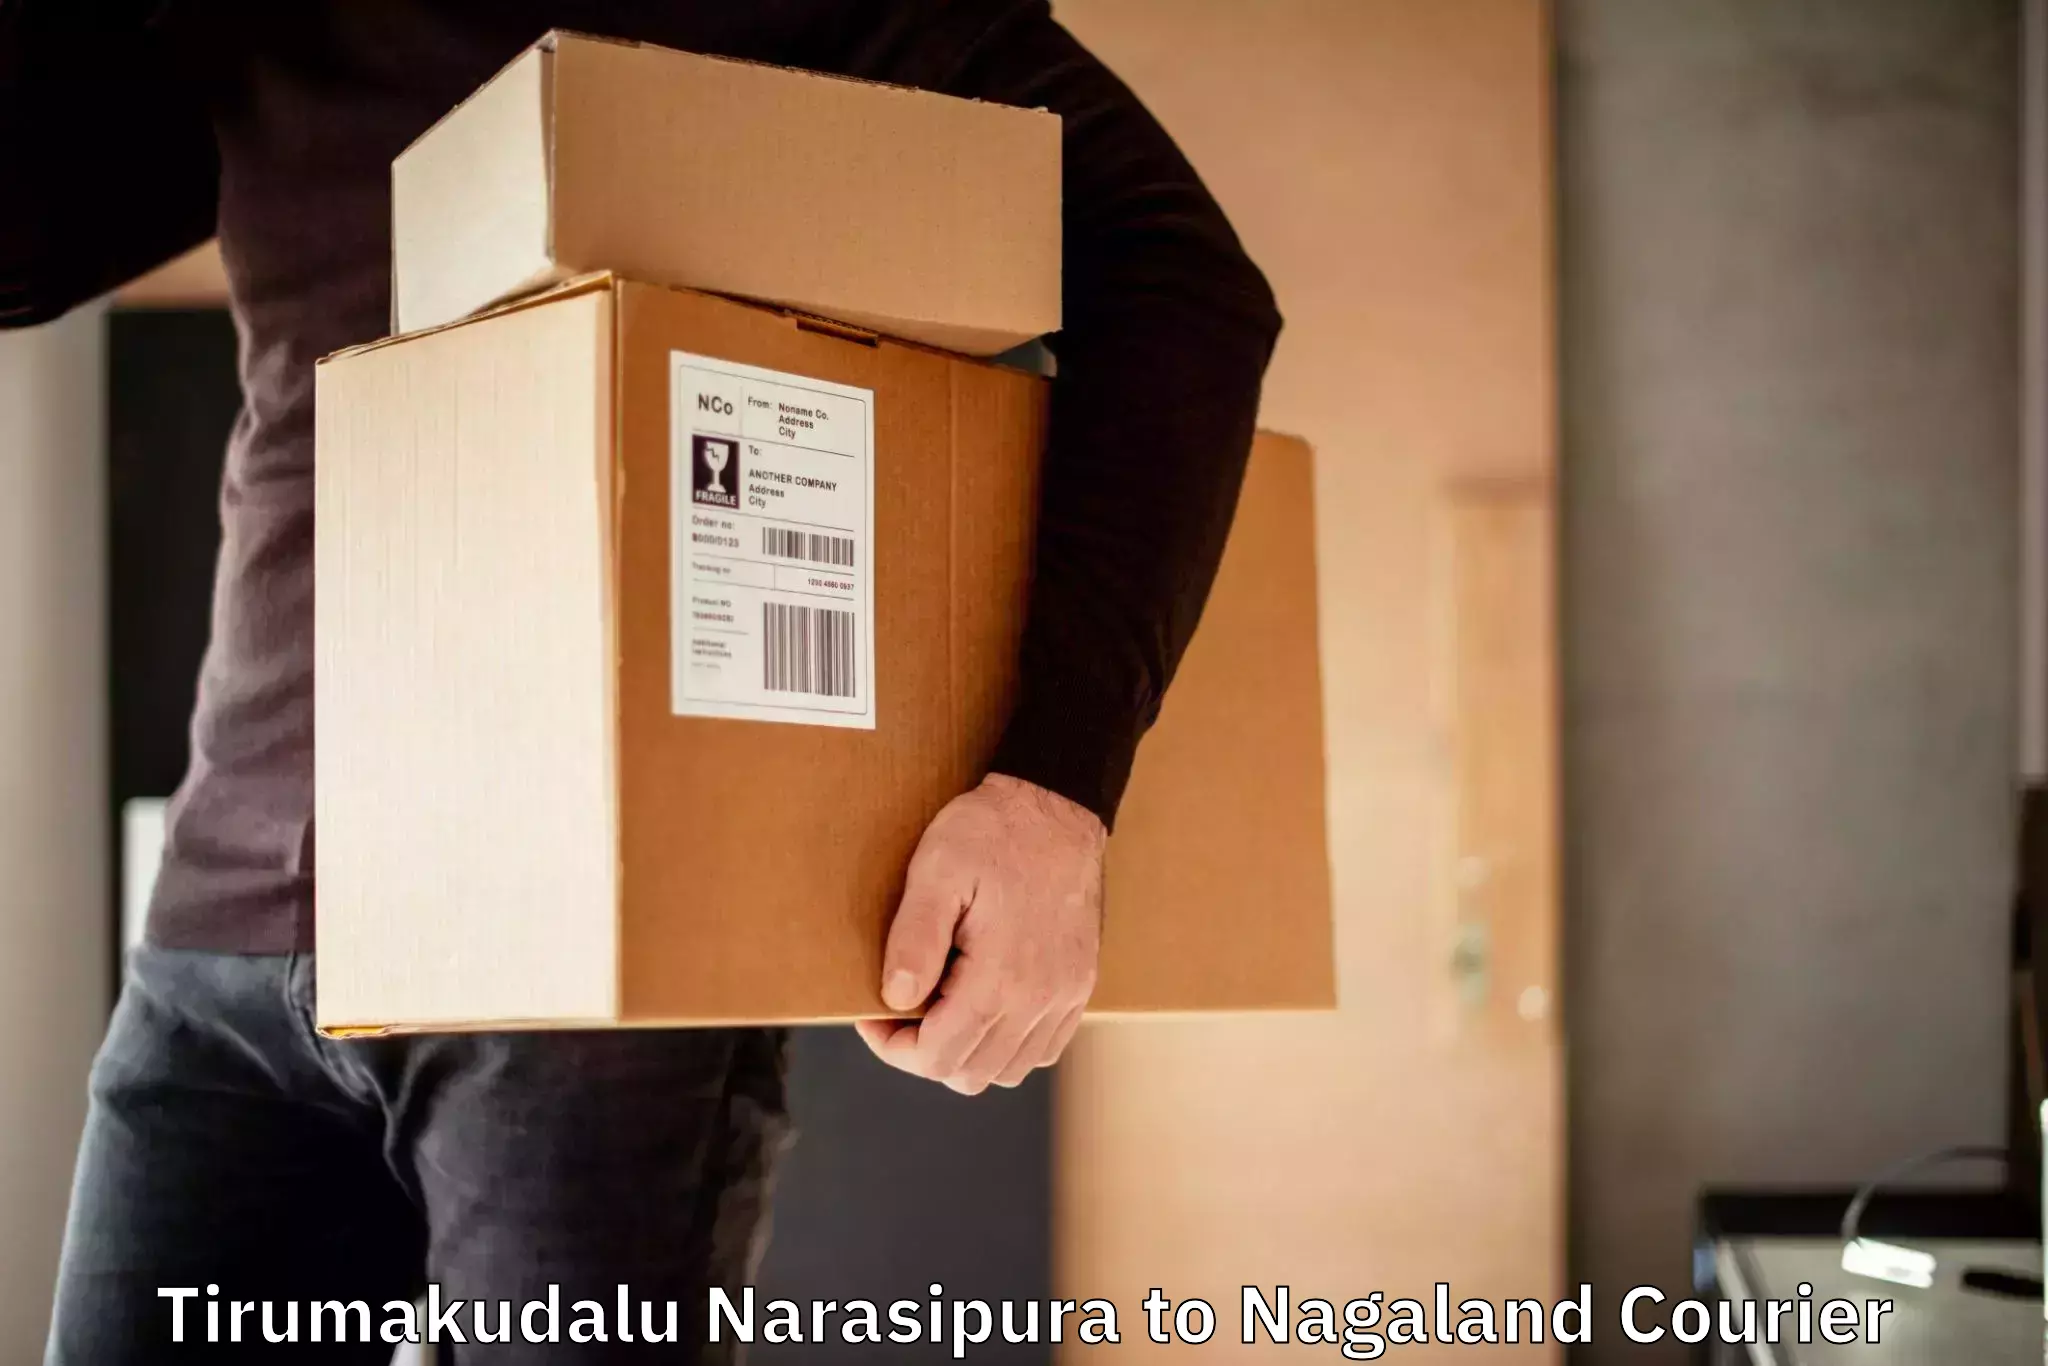 Personal courier services Tirumakudalu Narasipura to Nagaland